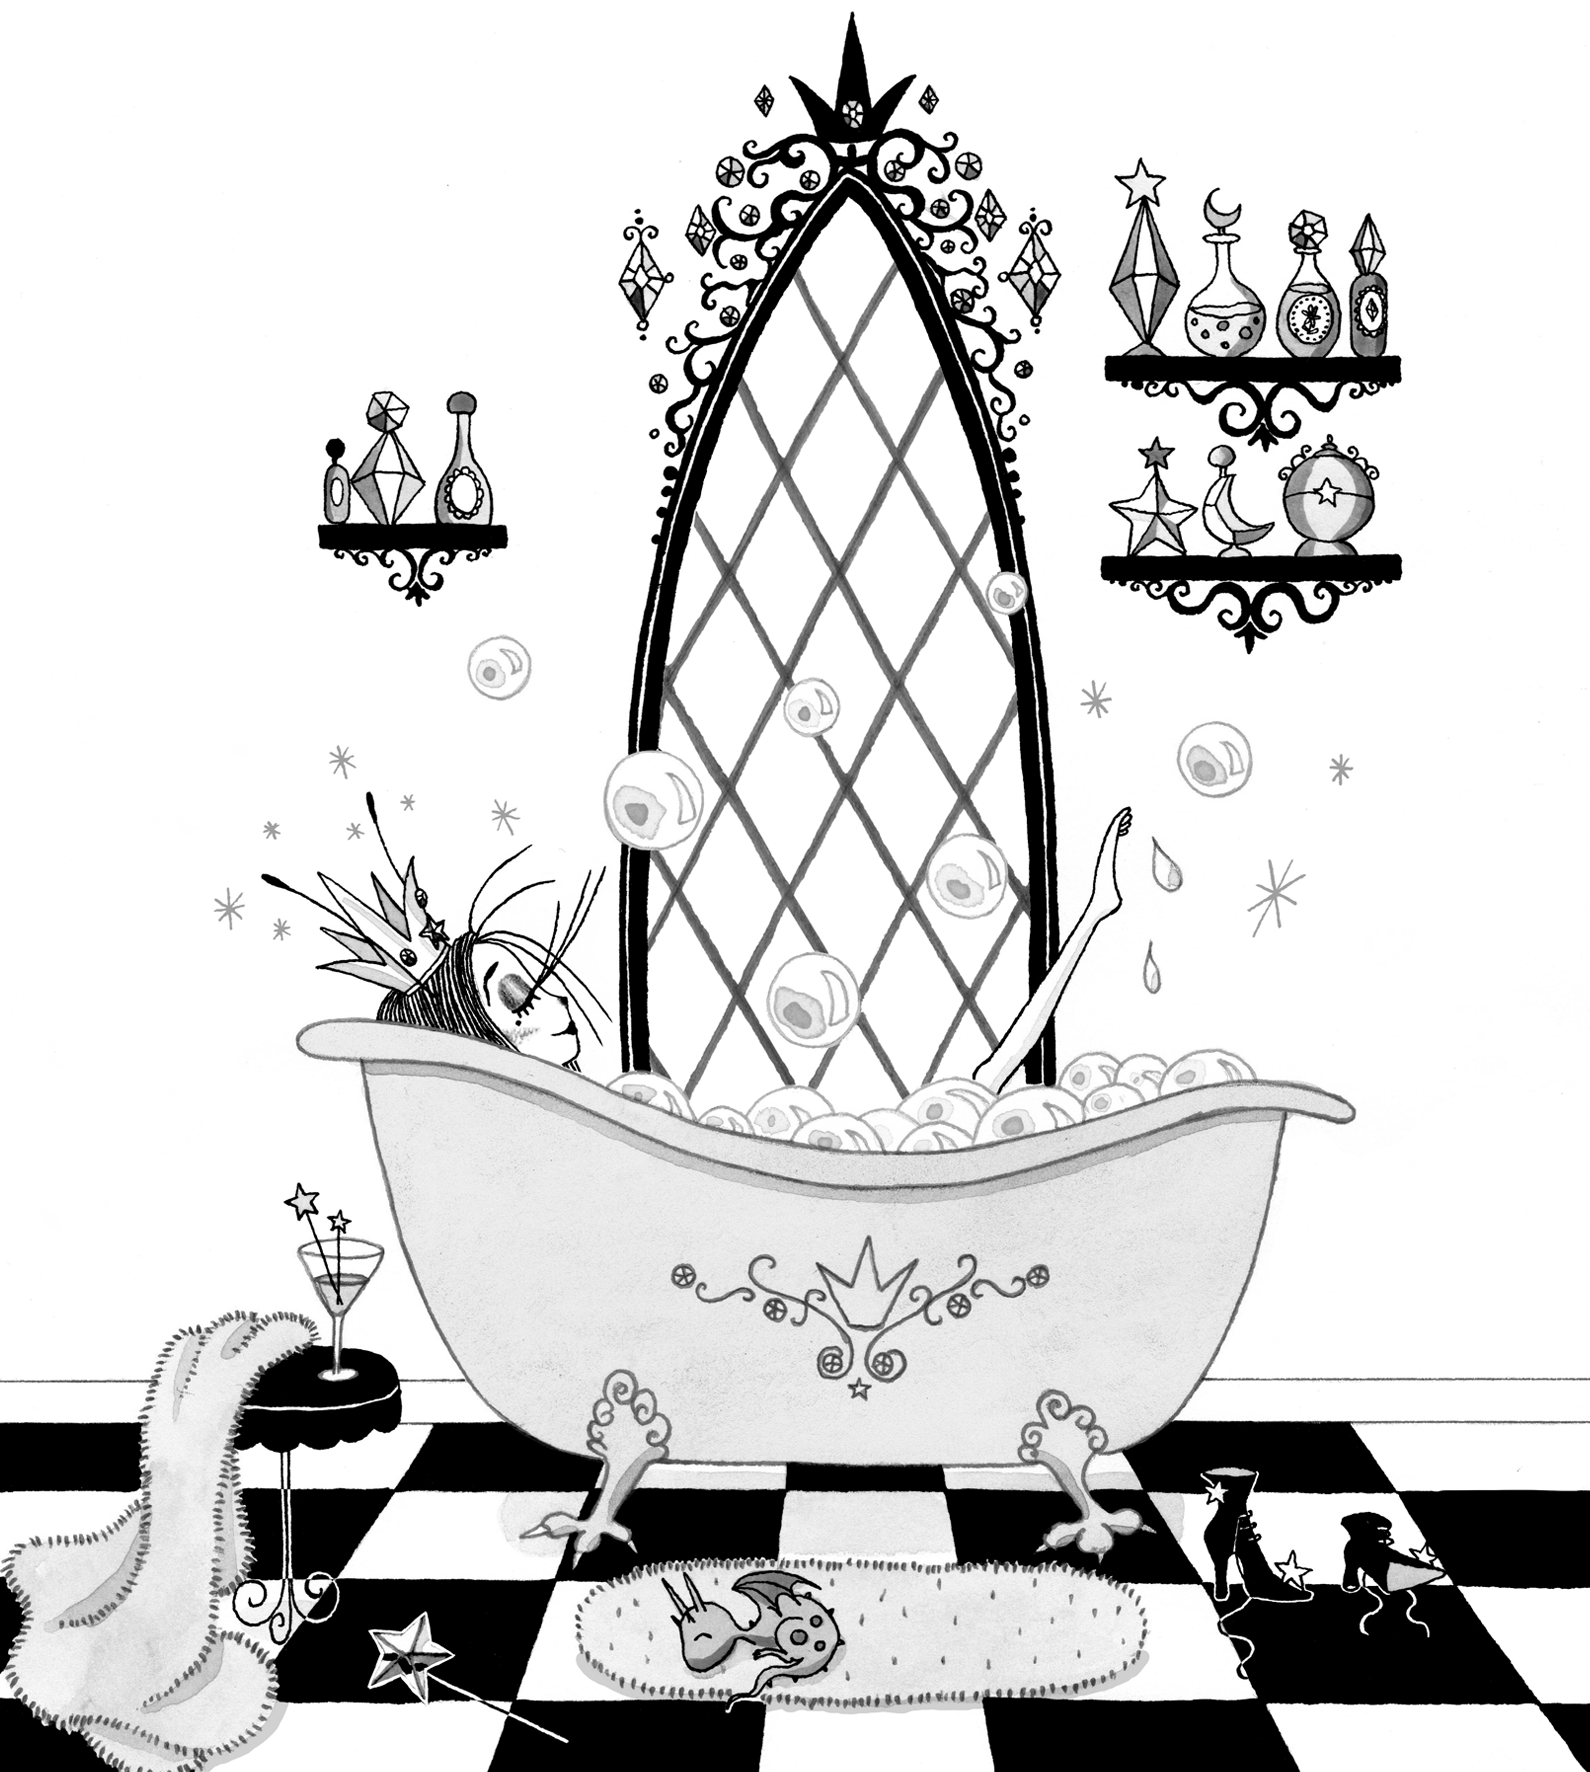 Victoria Stitch in bathtub by Harriet Muncaster